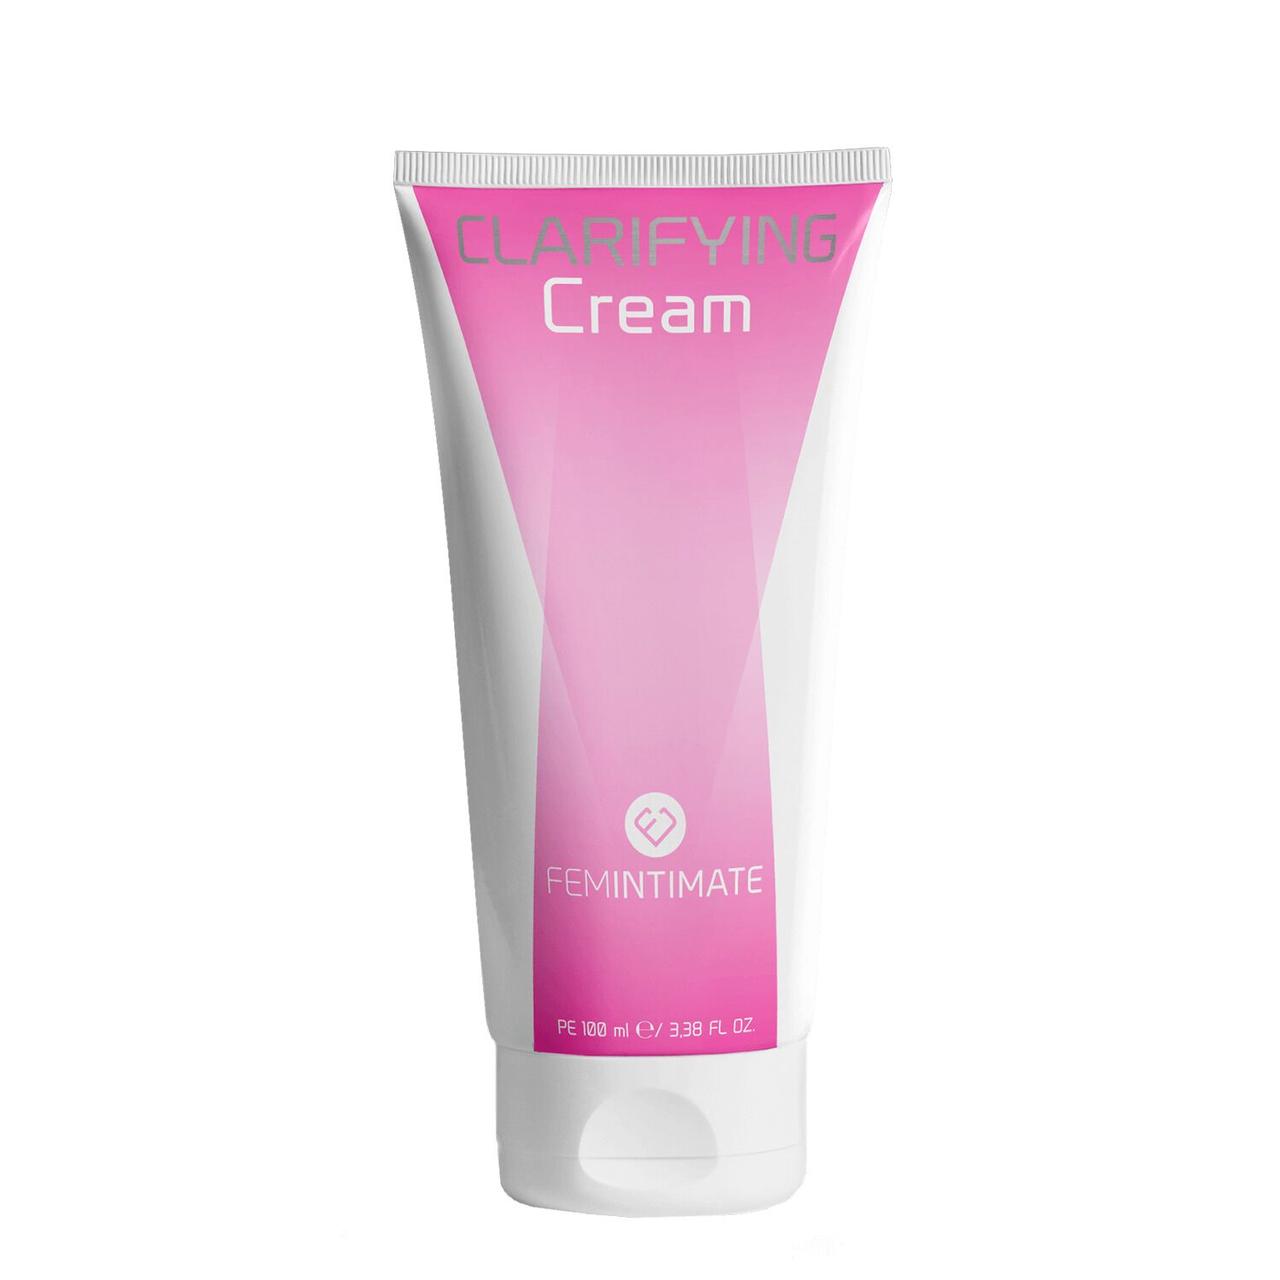 Відбілювальний крем Femintimate Clarifying Cream (100 мл). DreamShop